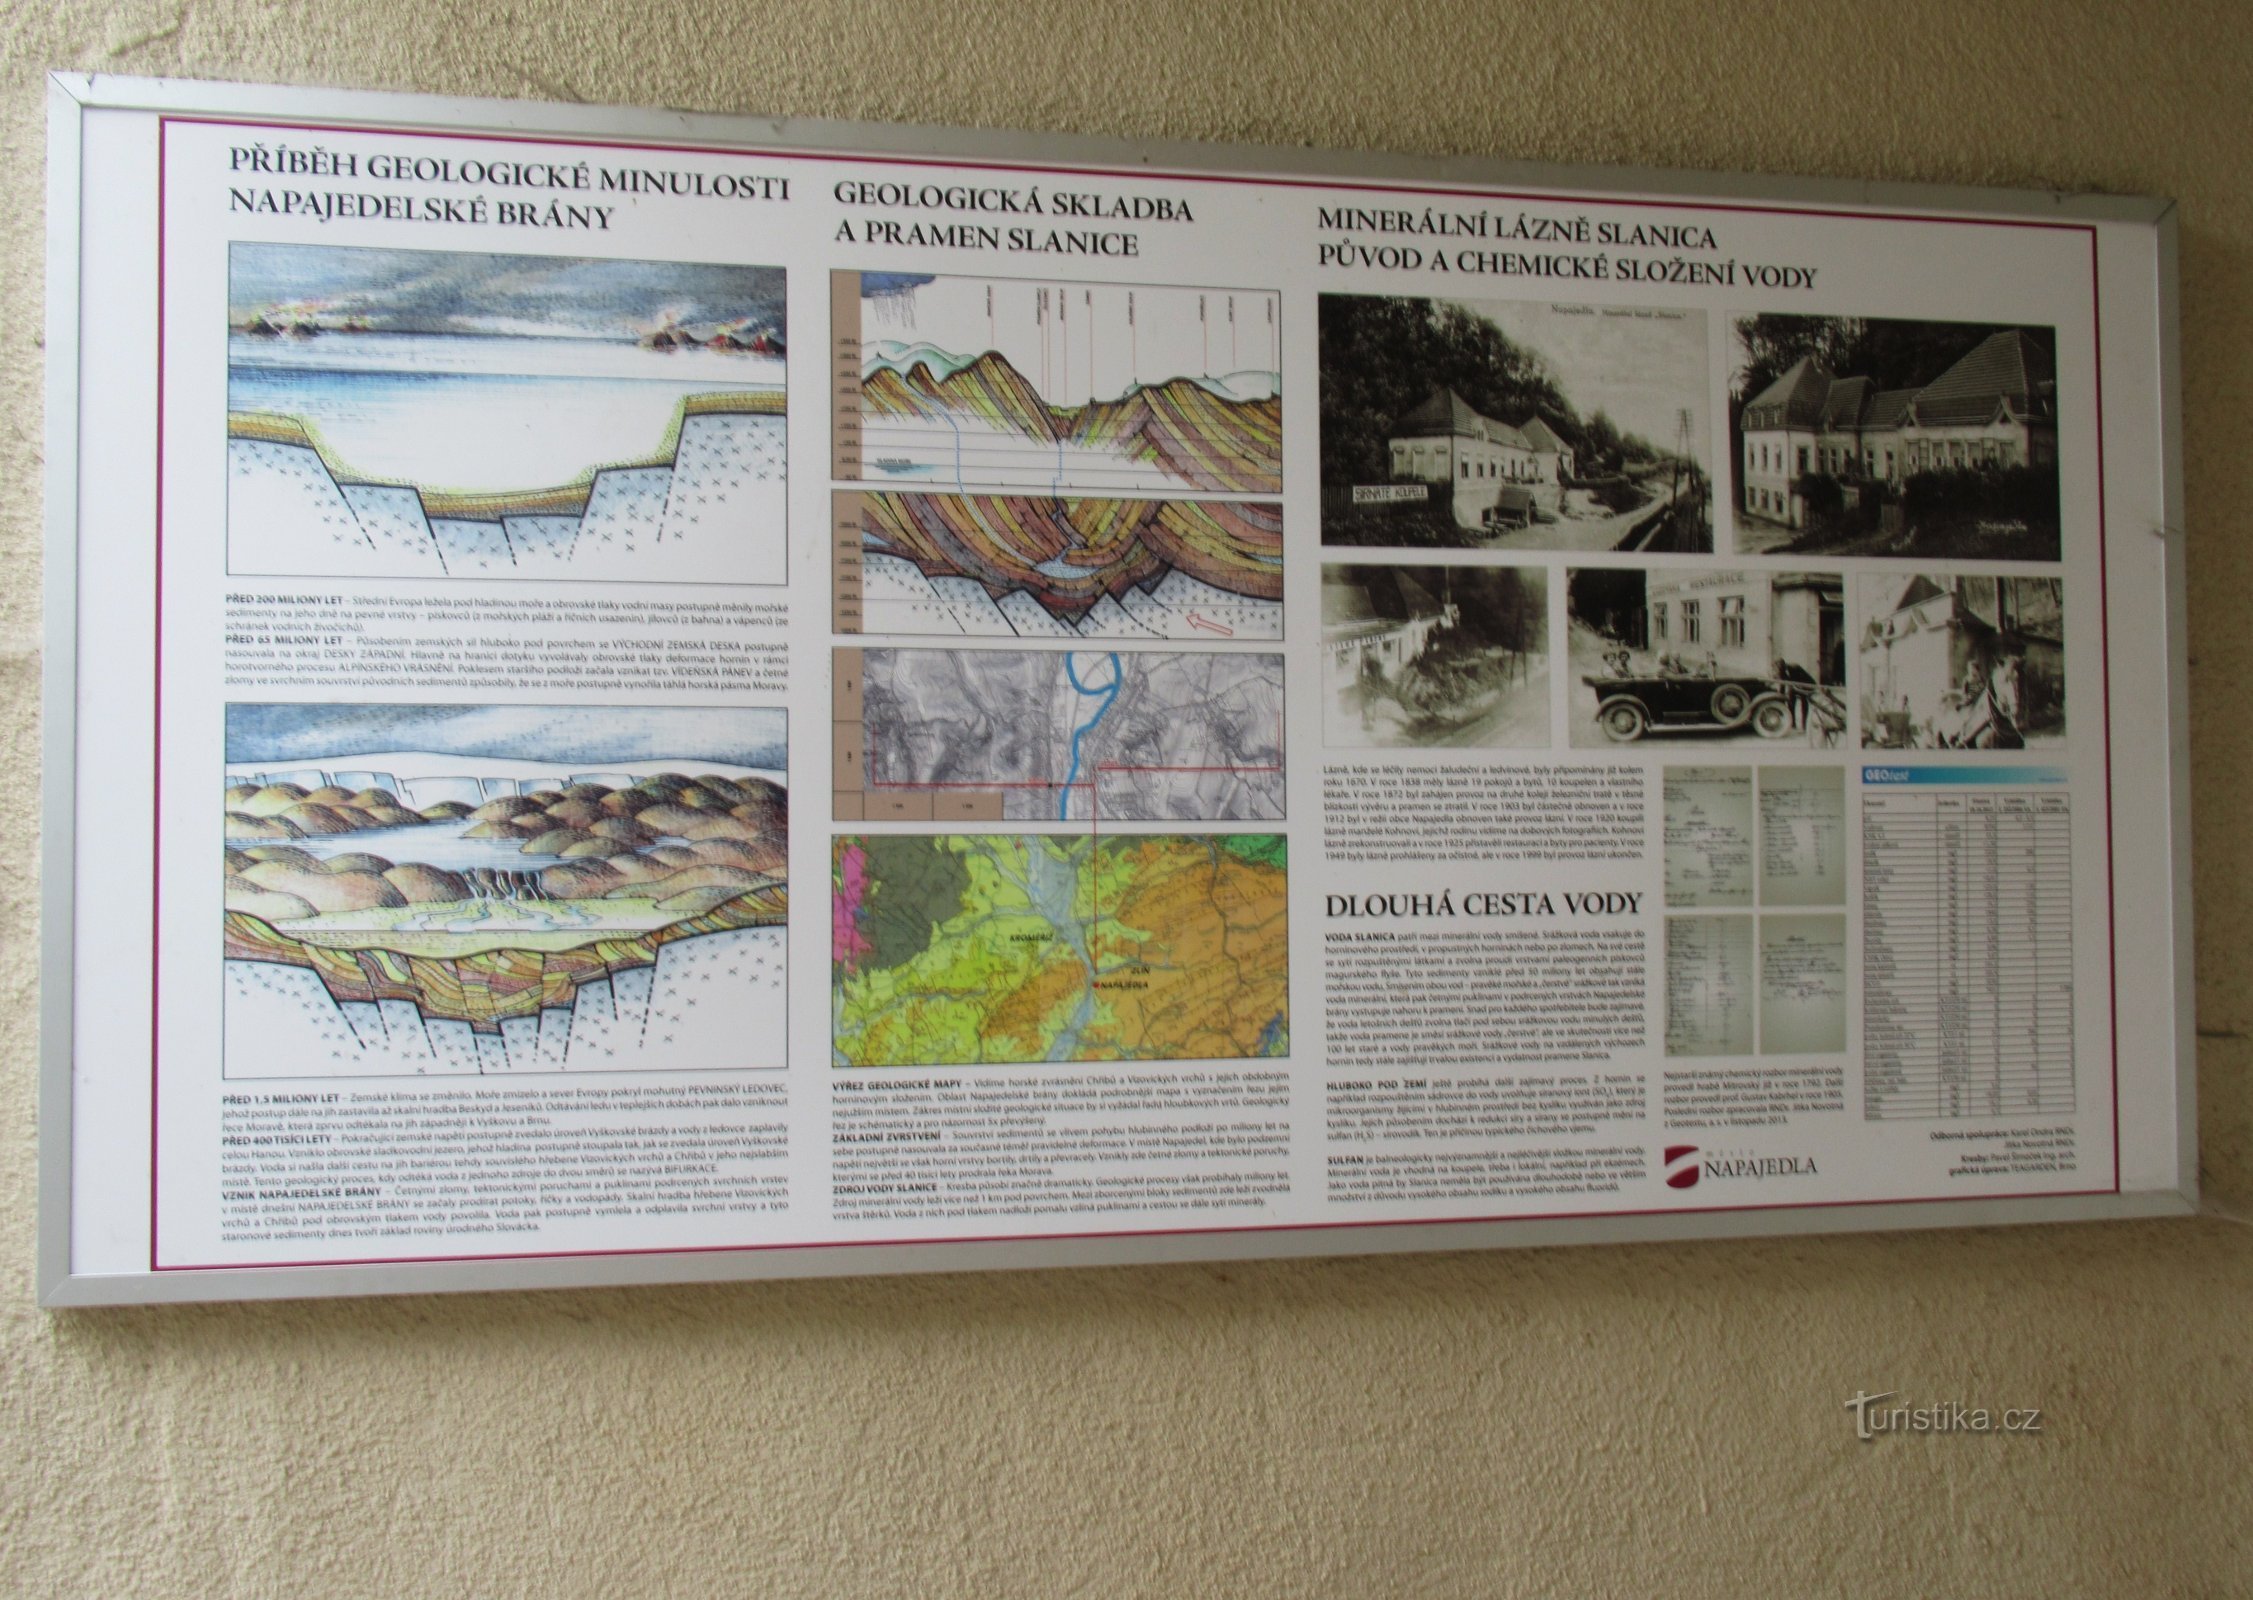 ナパイェドリーの鉱泉スラニカ